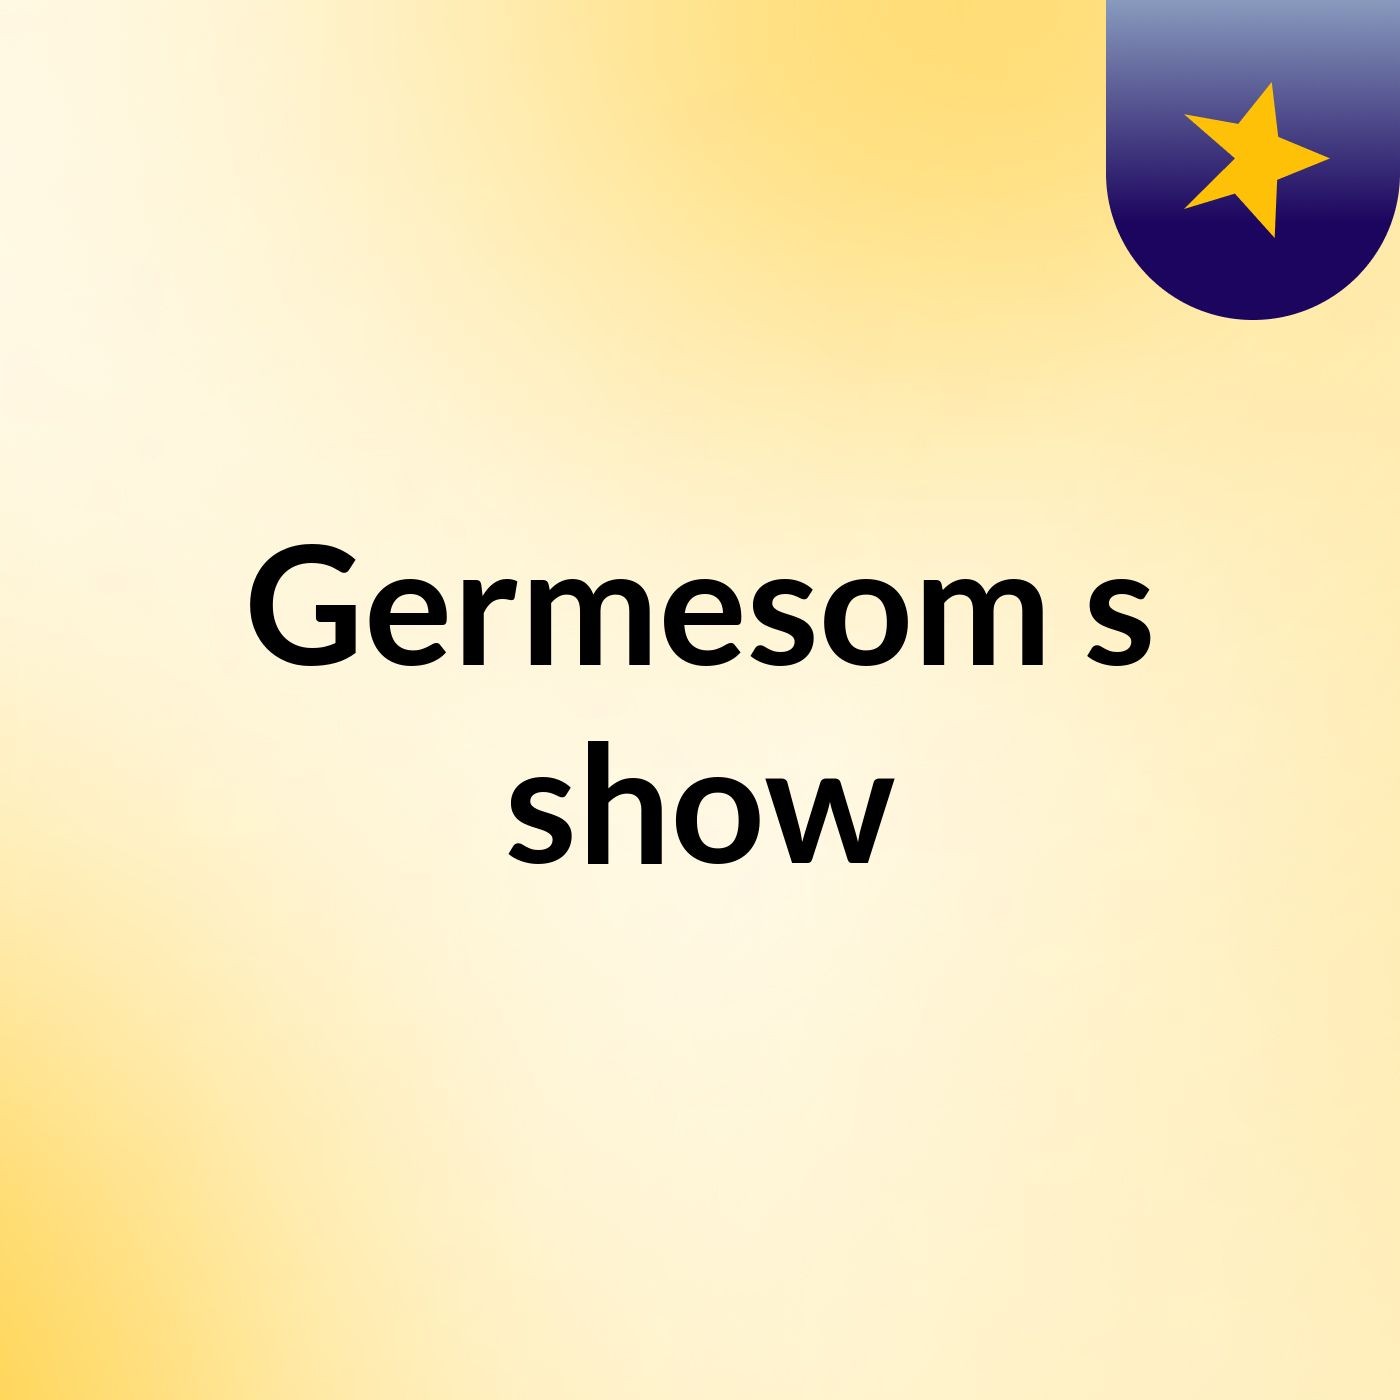 Germesom's show